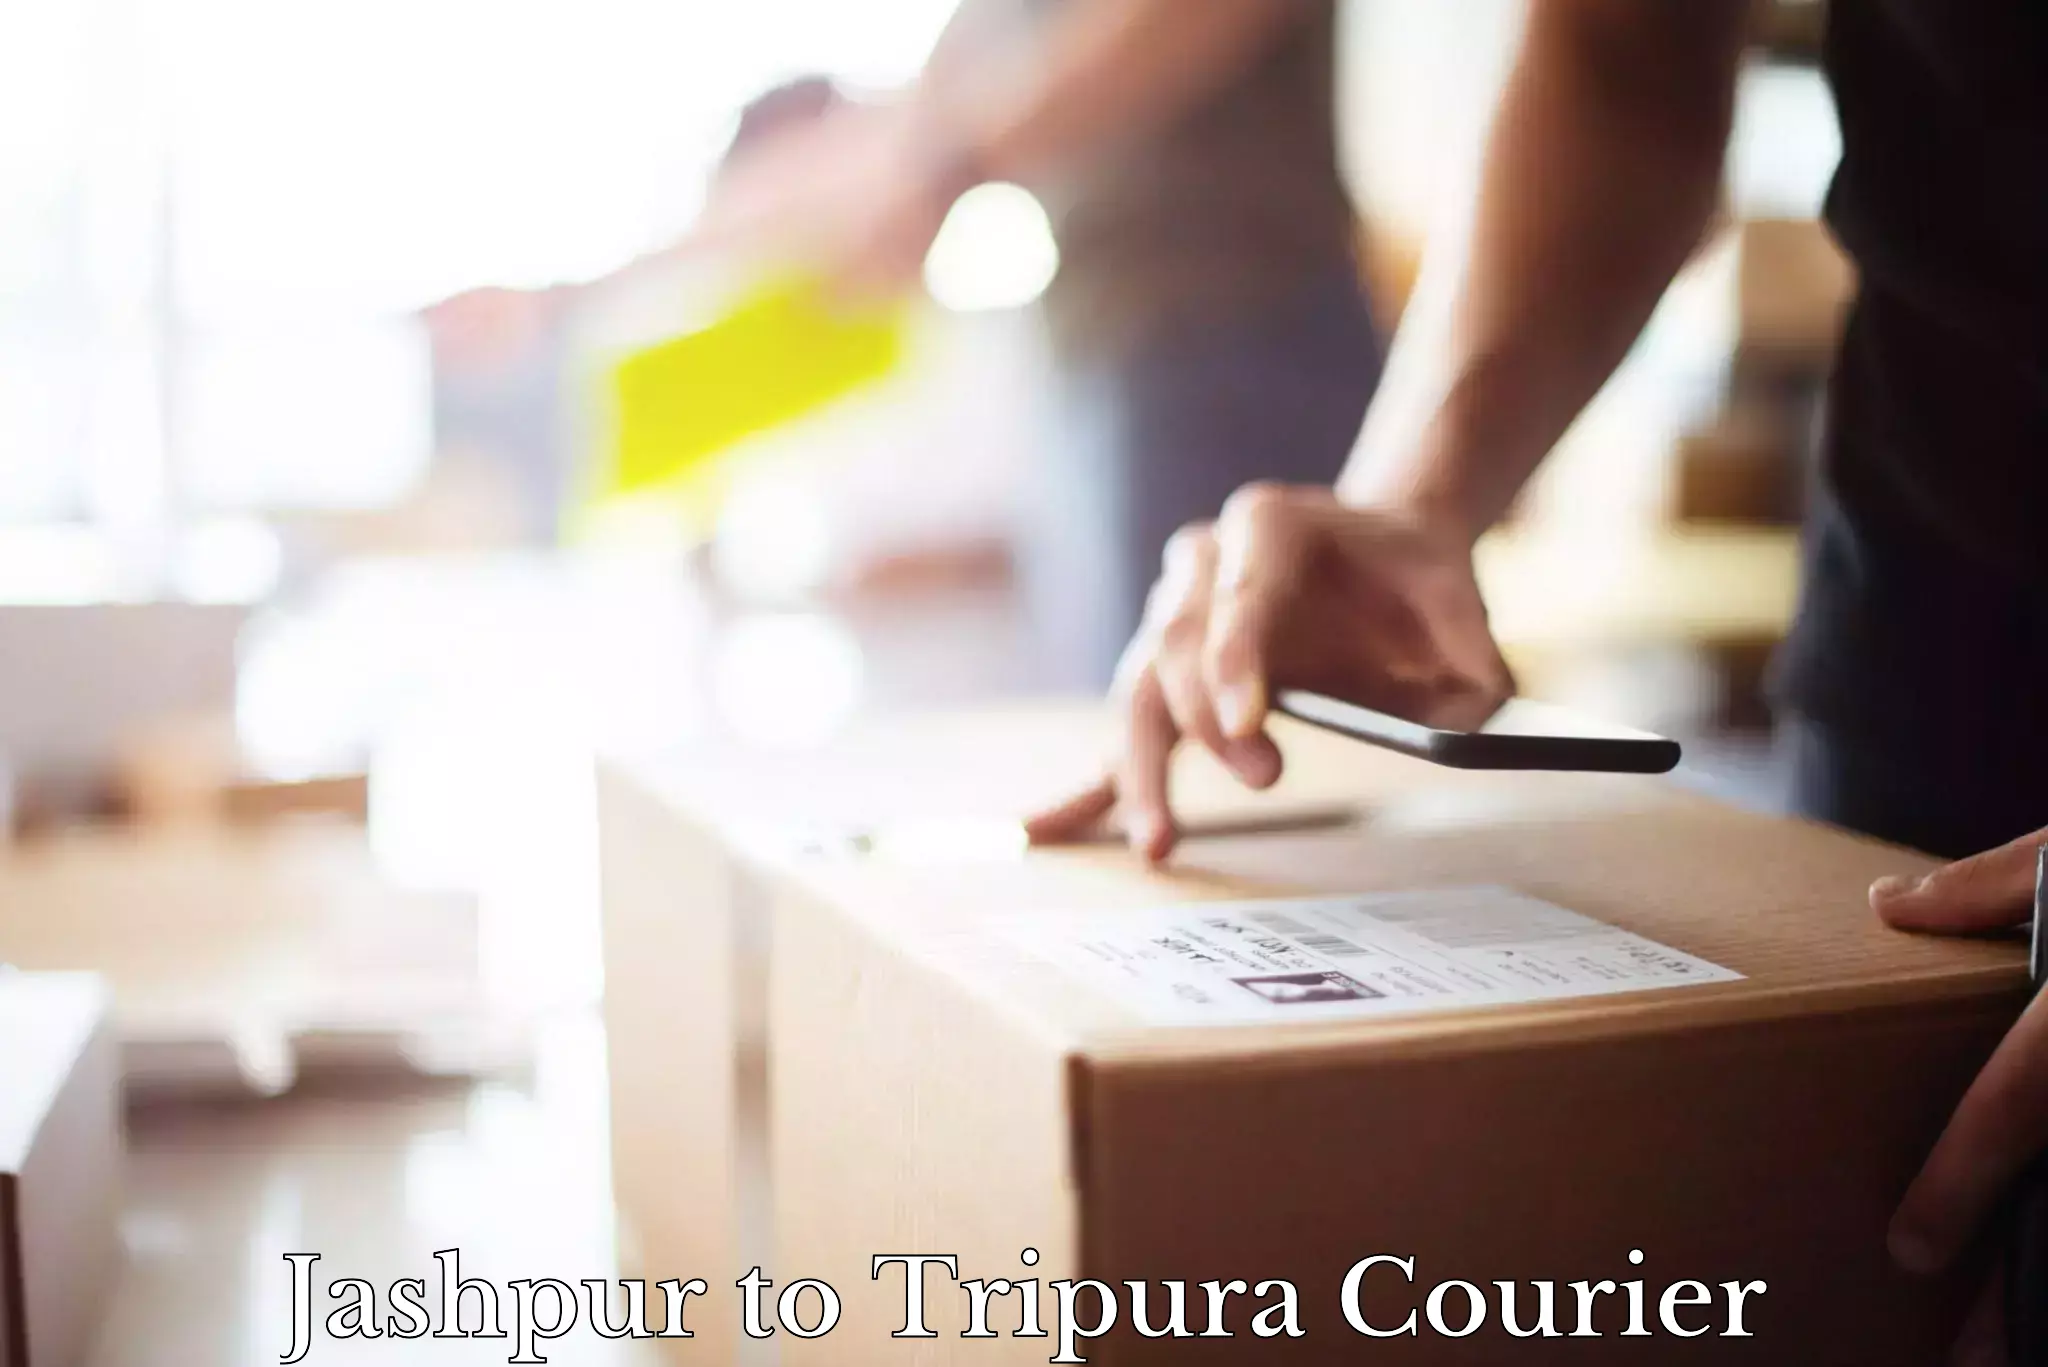 Affordable parcel service Jashpur to Manughat